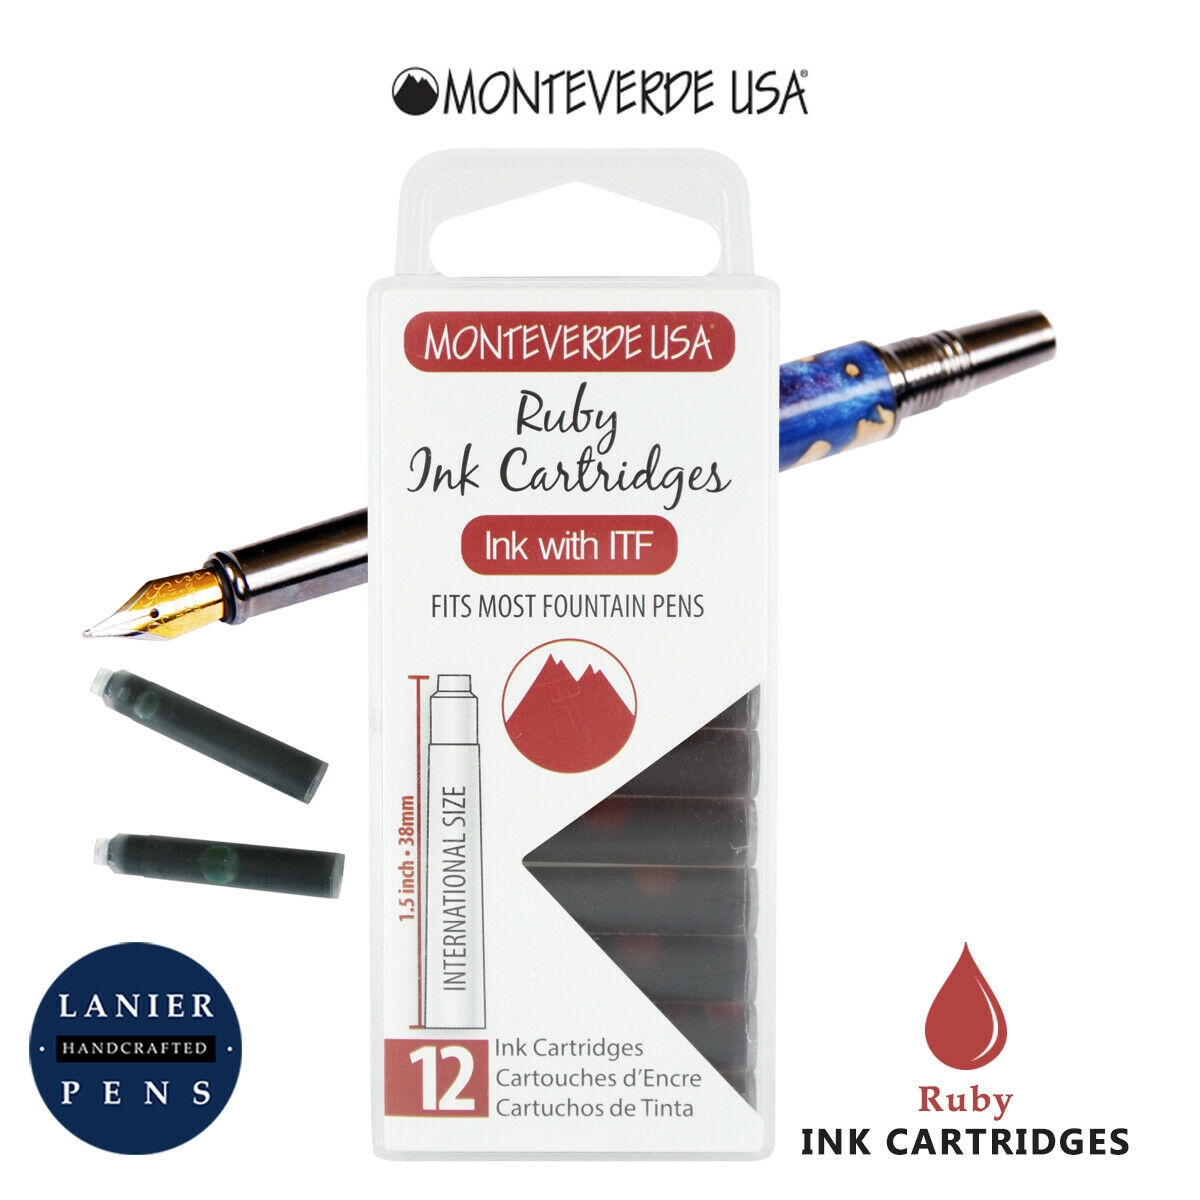 Monteverde G305RU Ink Cartridges Clear Case Gemstone Ruby- Pack of 12